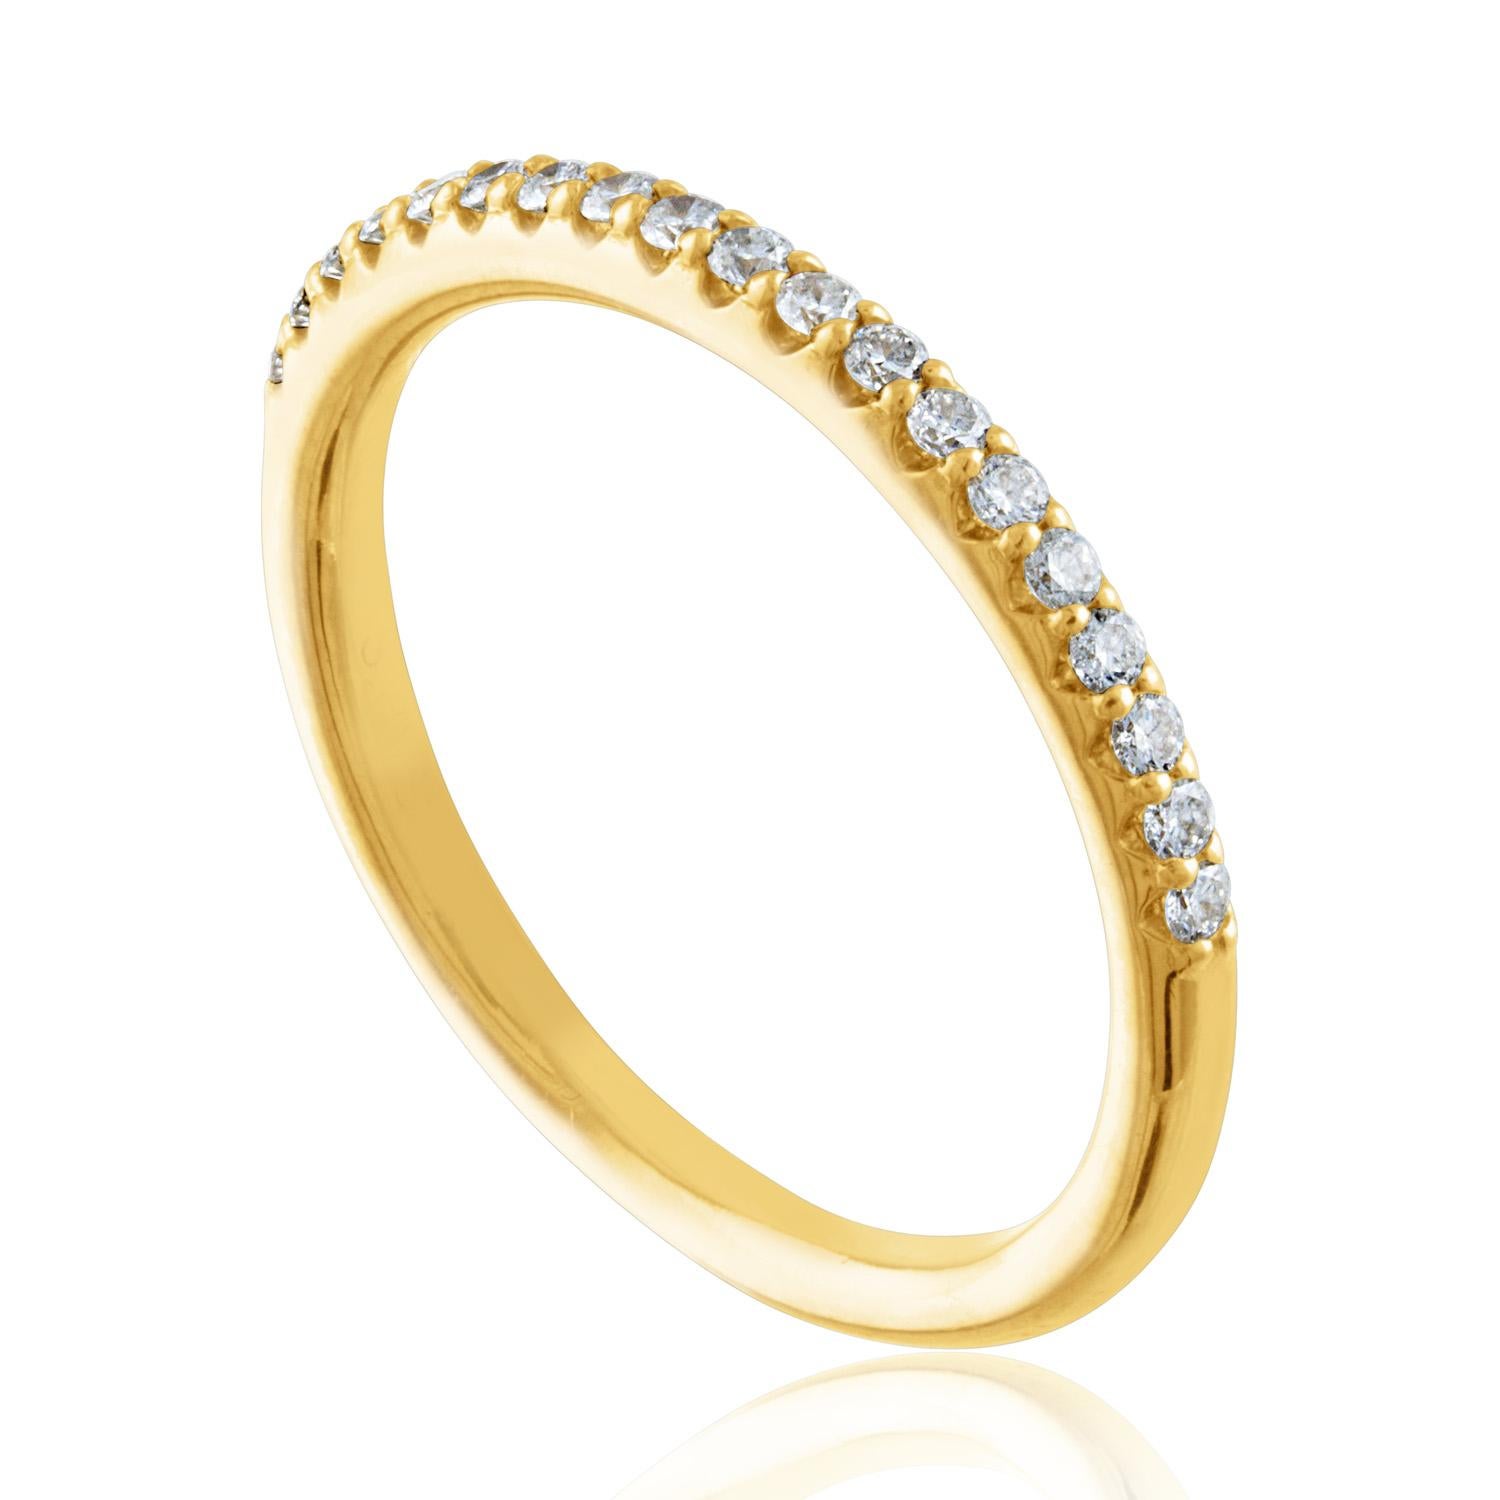 Sehr klassischer halber Bandring.
Der Ring ist aus 14K Gelbgold.
Es sind 0,21 Karat in Diamanten G VS/SI.
Der Ring hat die Größe 6,75, größengerecht.
Der Ring wiegt 2,1 Gramm.
Erhältlich 4 Ringe, wenn Sie mehr als einen wollen.